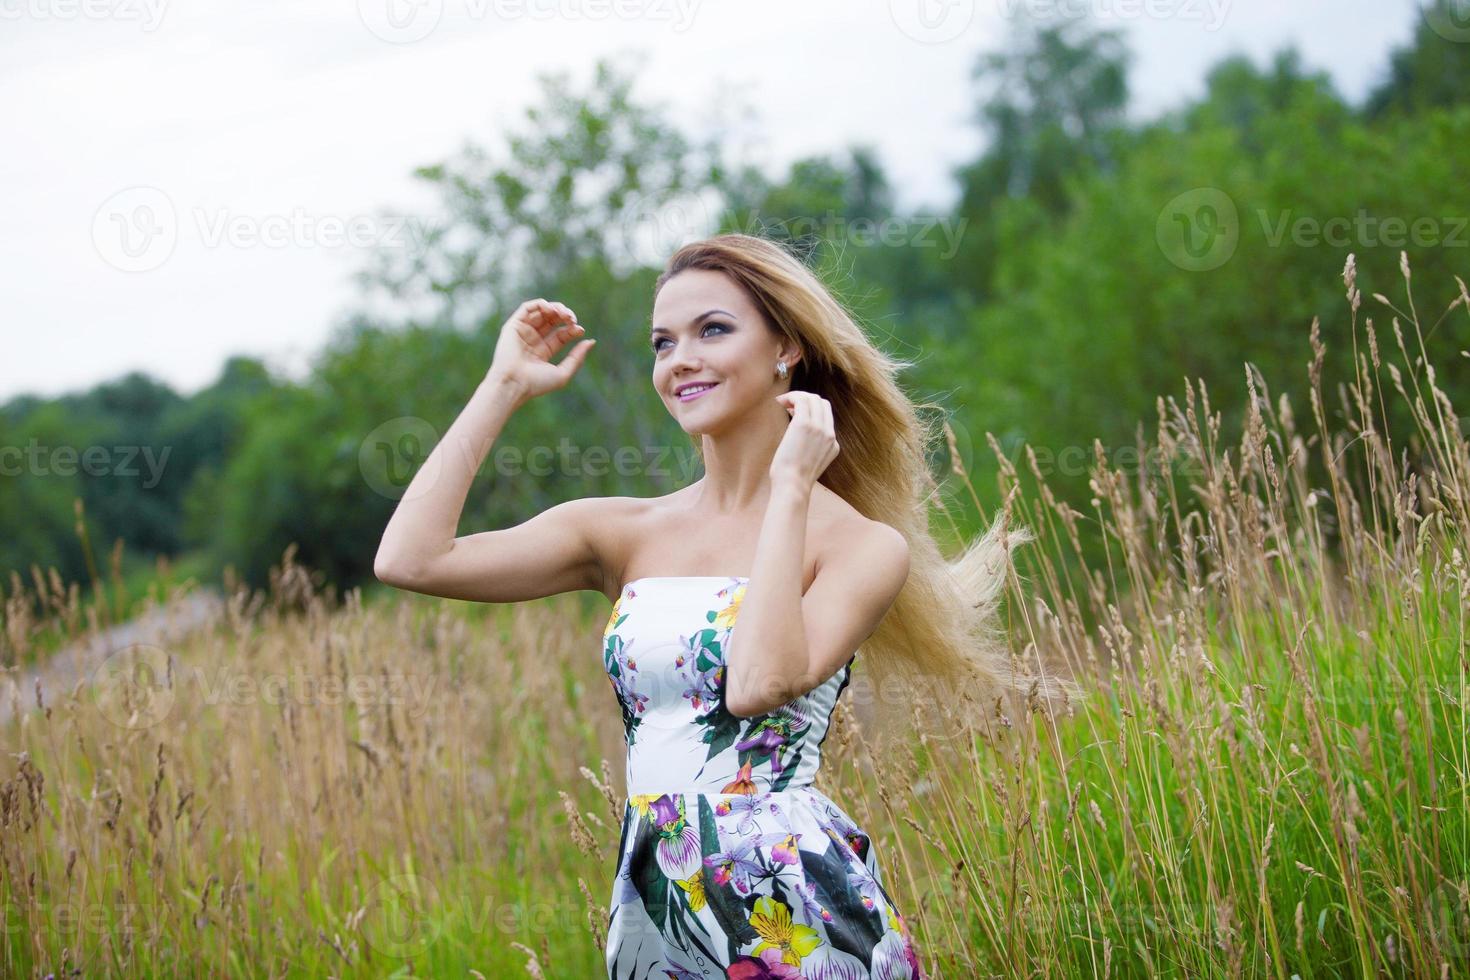 menina de beleza ao ar livre curtindo a natureza, garota loira de vestido na foto